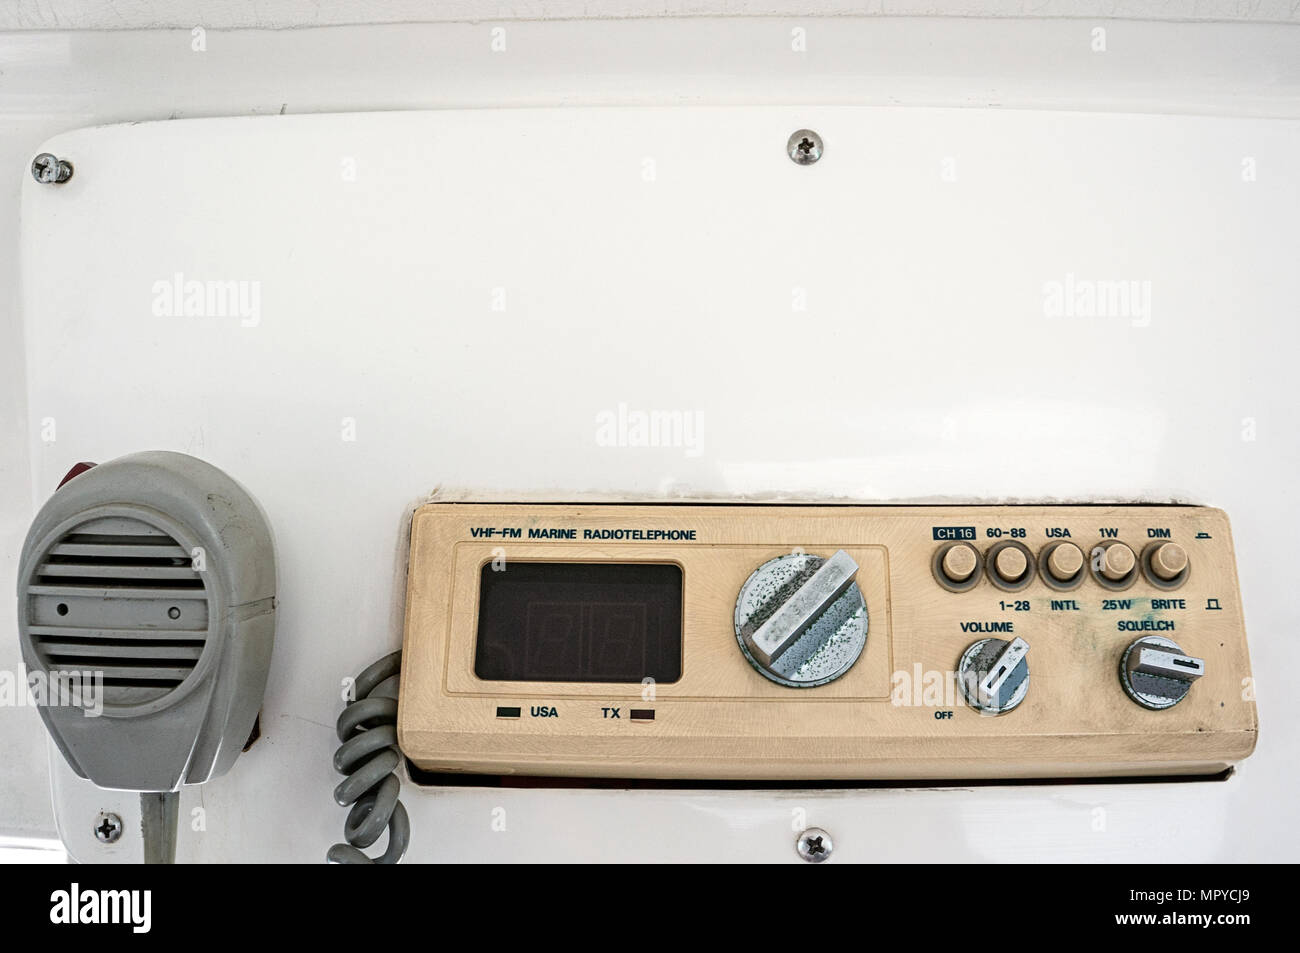 Marine Radio Telefon UKW-FM-Frequenz nautischen Kommunikation